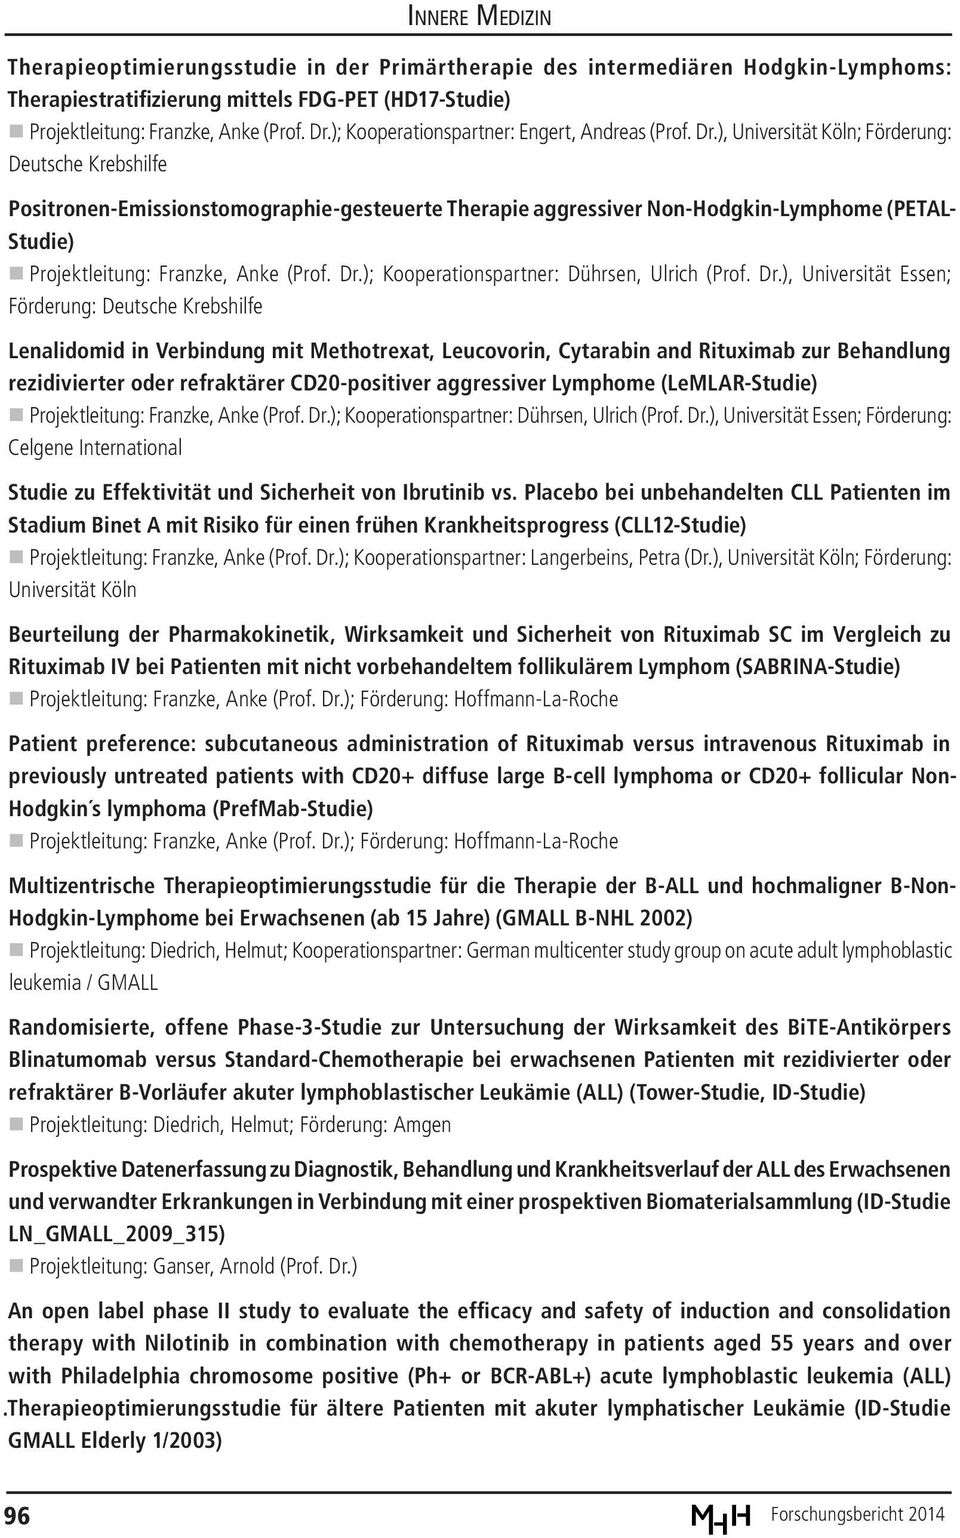 ), Universität Köln; Förderung: Deutsche Krebshilfe Positronen-Emissionstomographie-gesteuerte Therapie aggressiver Non-Hodgkin-Lymphome (PETAL- Studie) Projektleitung: Franzke, Anke (Prof. Dr.